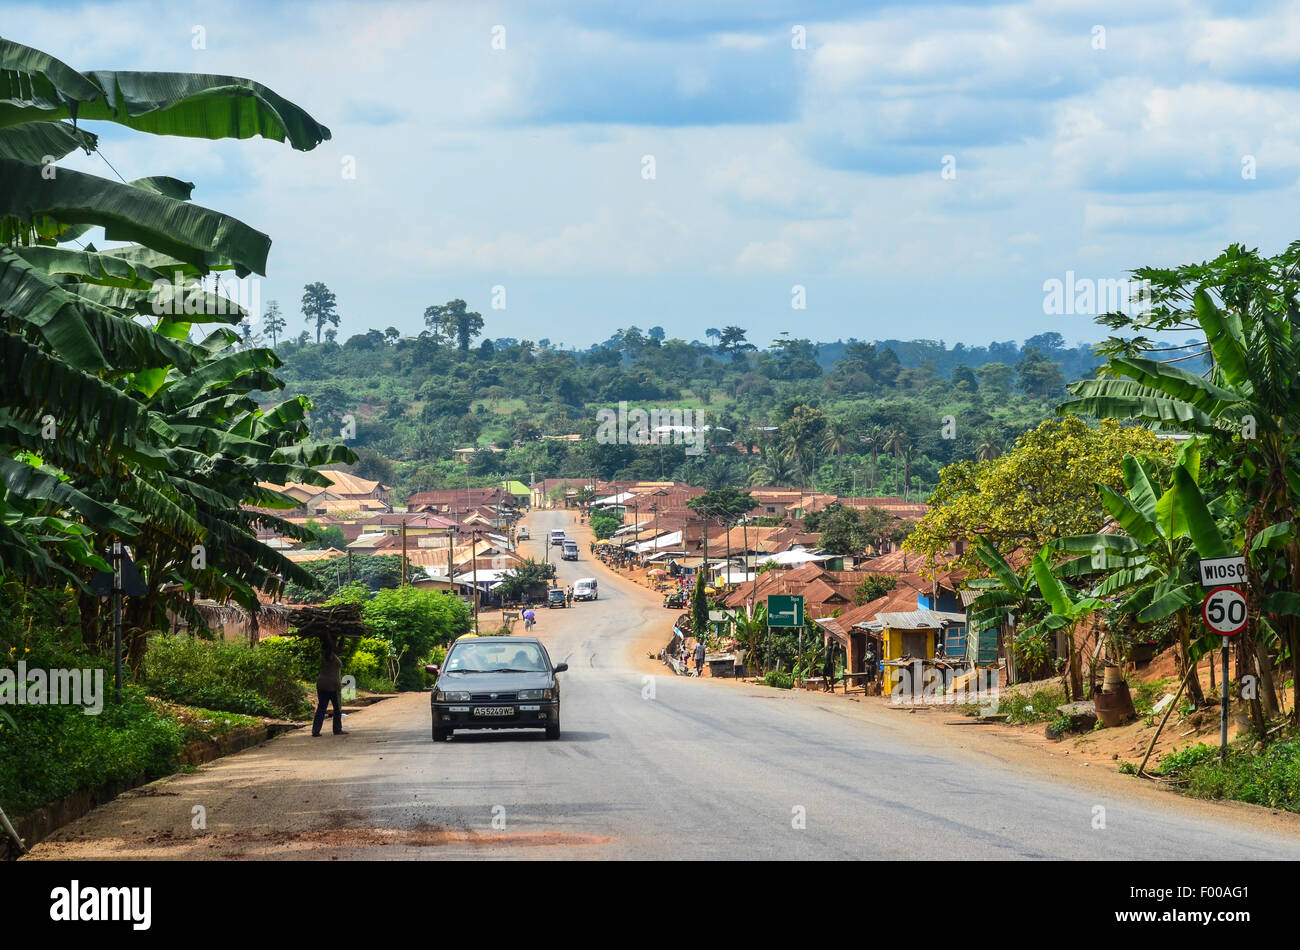 Vistas rurales de Ghana, un camino que cruza una aldea Foto de stock